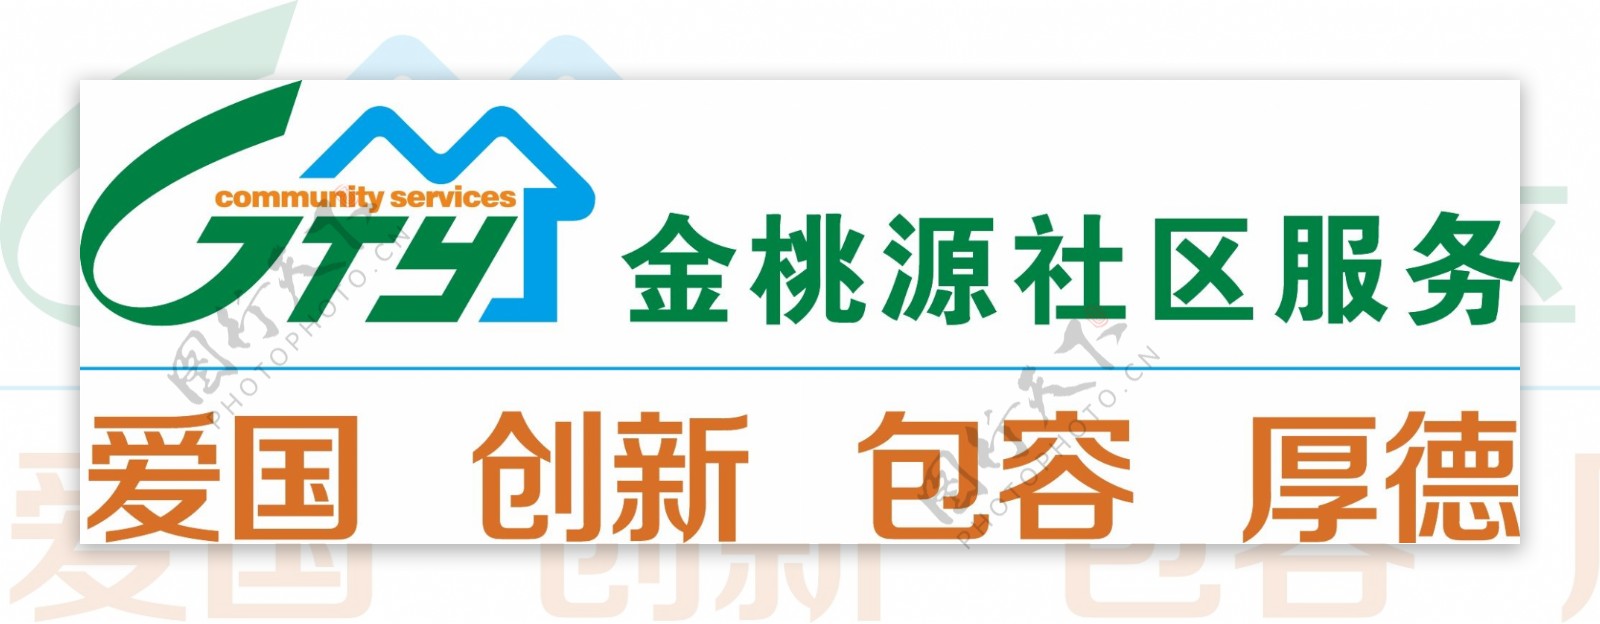 金桃源社区服务logo